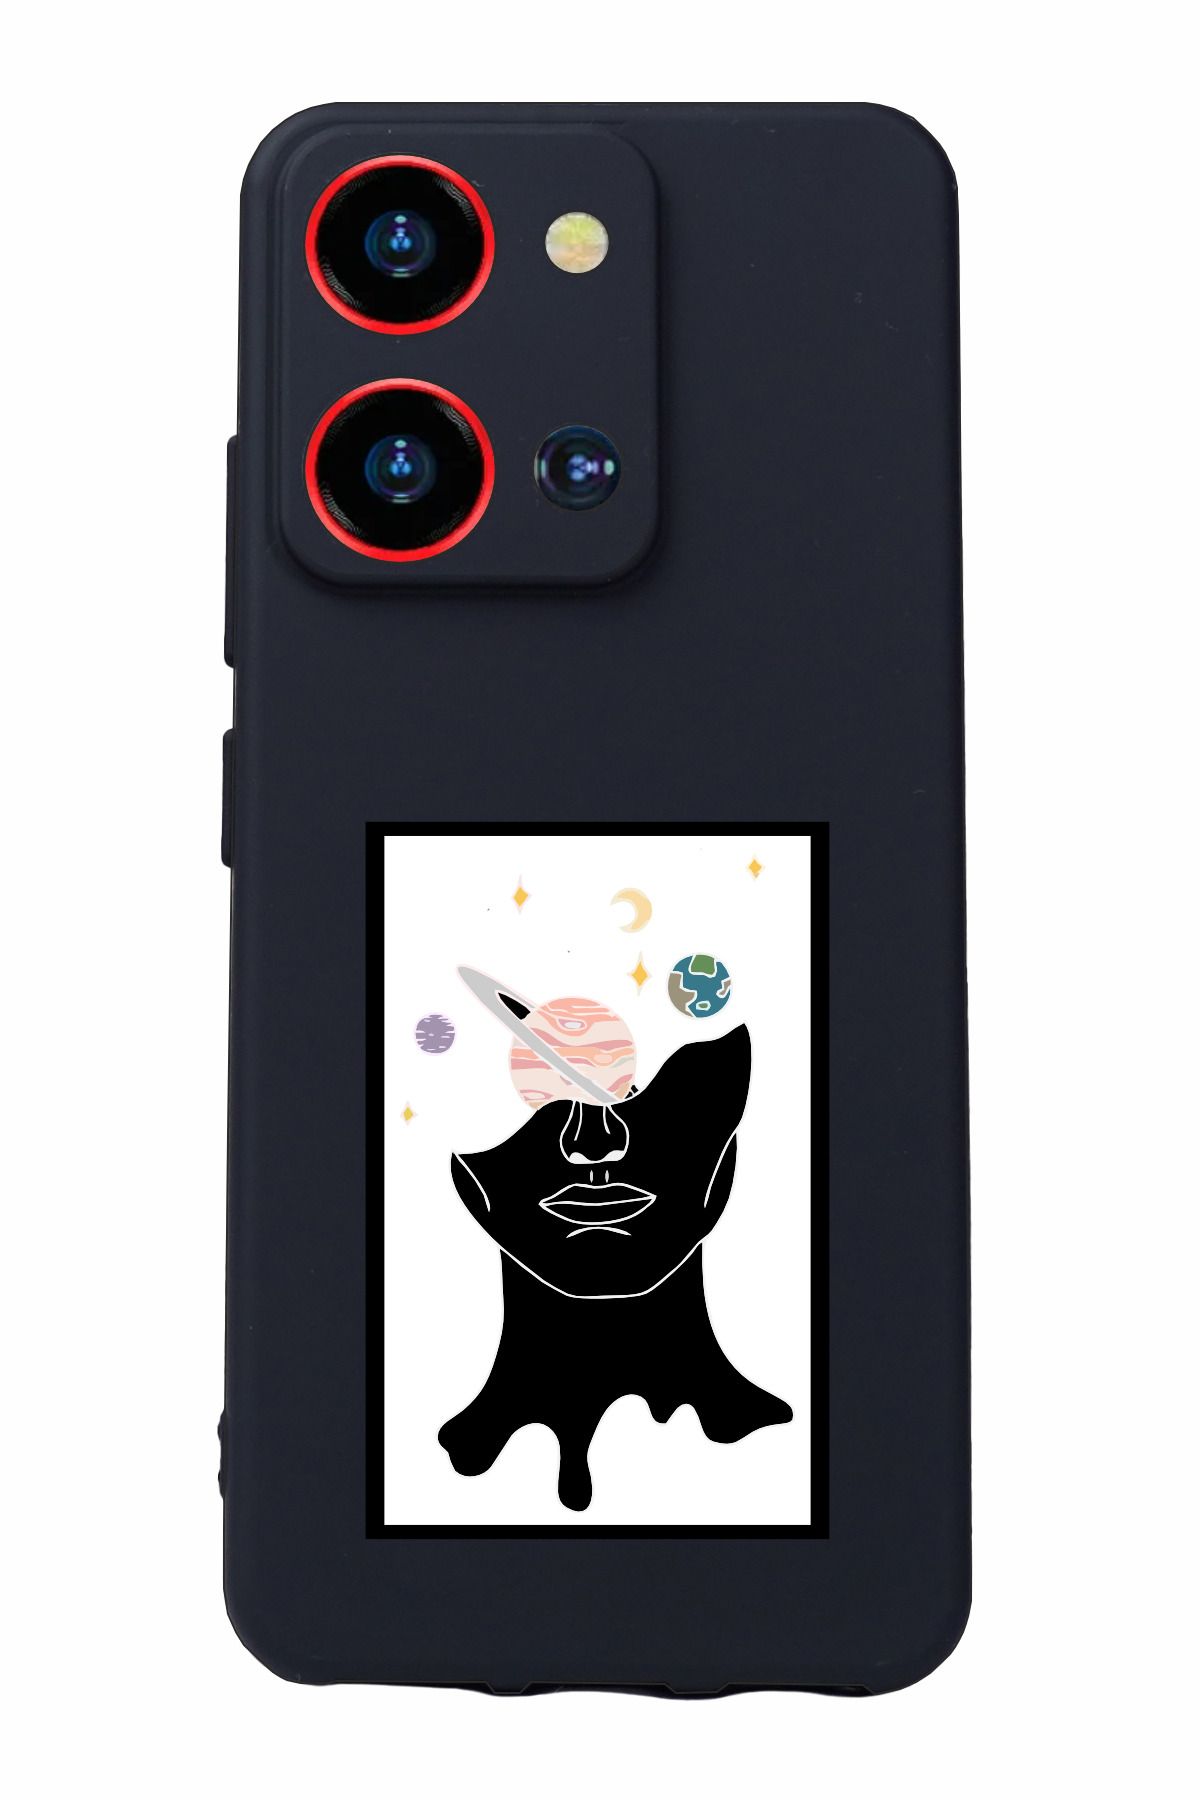 Reeder S19 Max Pro S Zoom Uyumlu Kamera Korumalı ve Tasarımlı Siyah Renk Silikon Kılıf